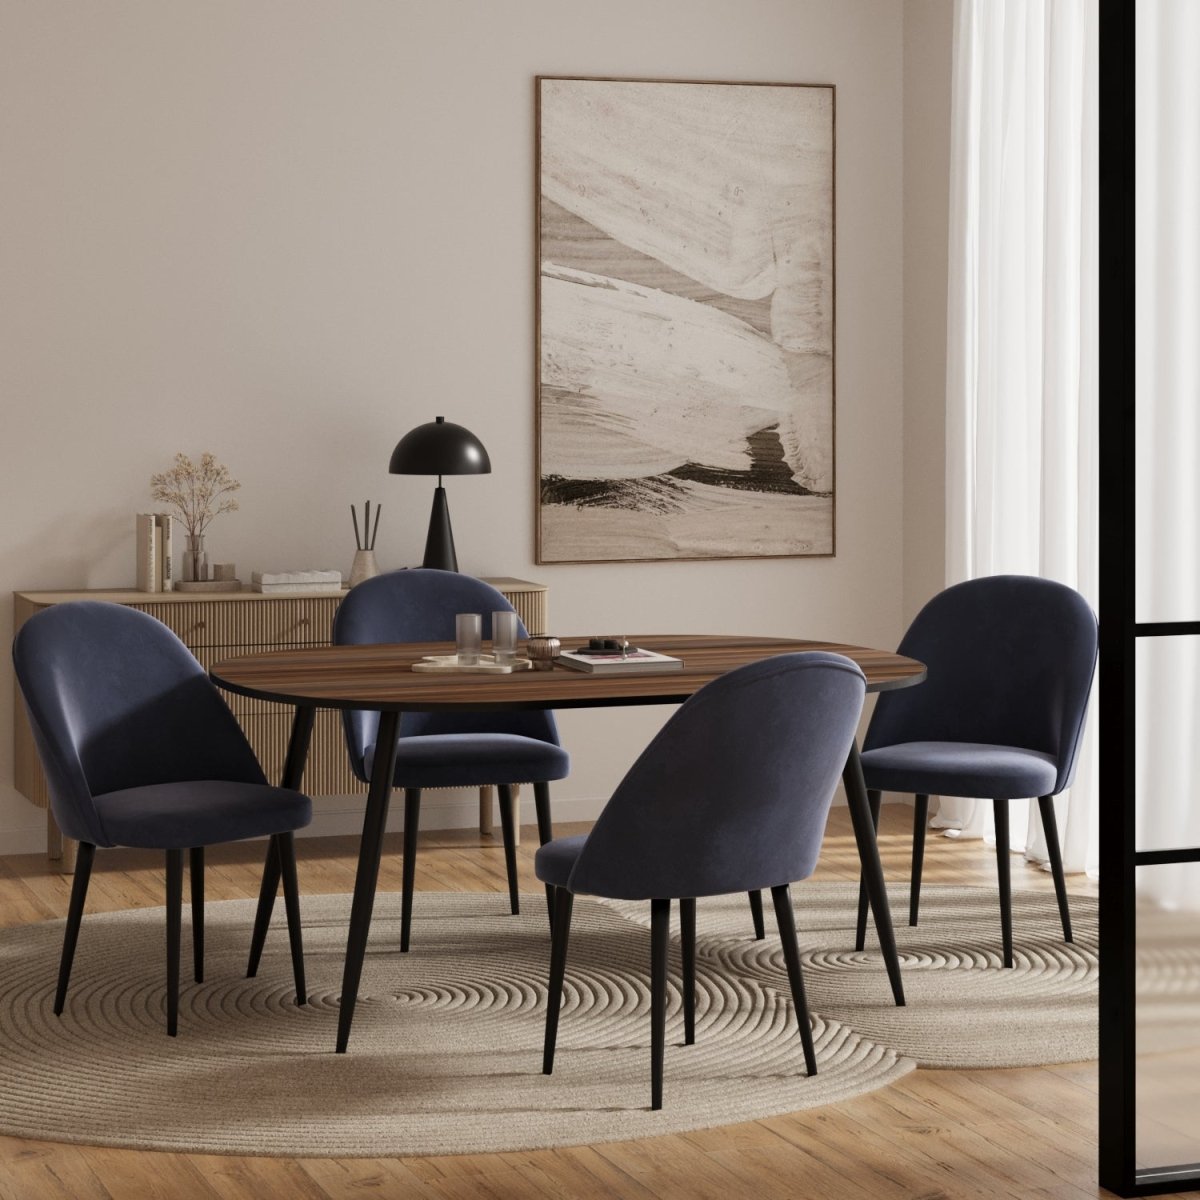 Chaises de salle à manger en velours bleu & métal noir - Potiron Paris, Potiron Paris, la déco des intérieurs hauts en couleurs